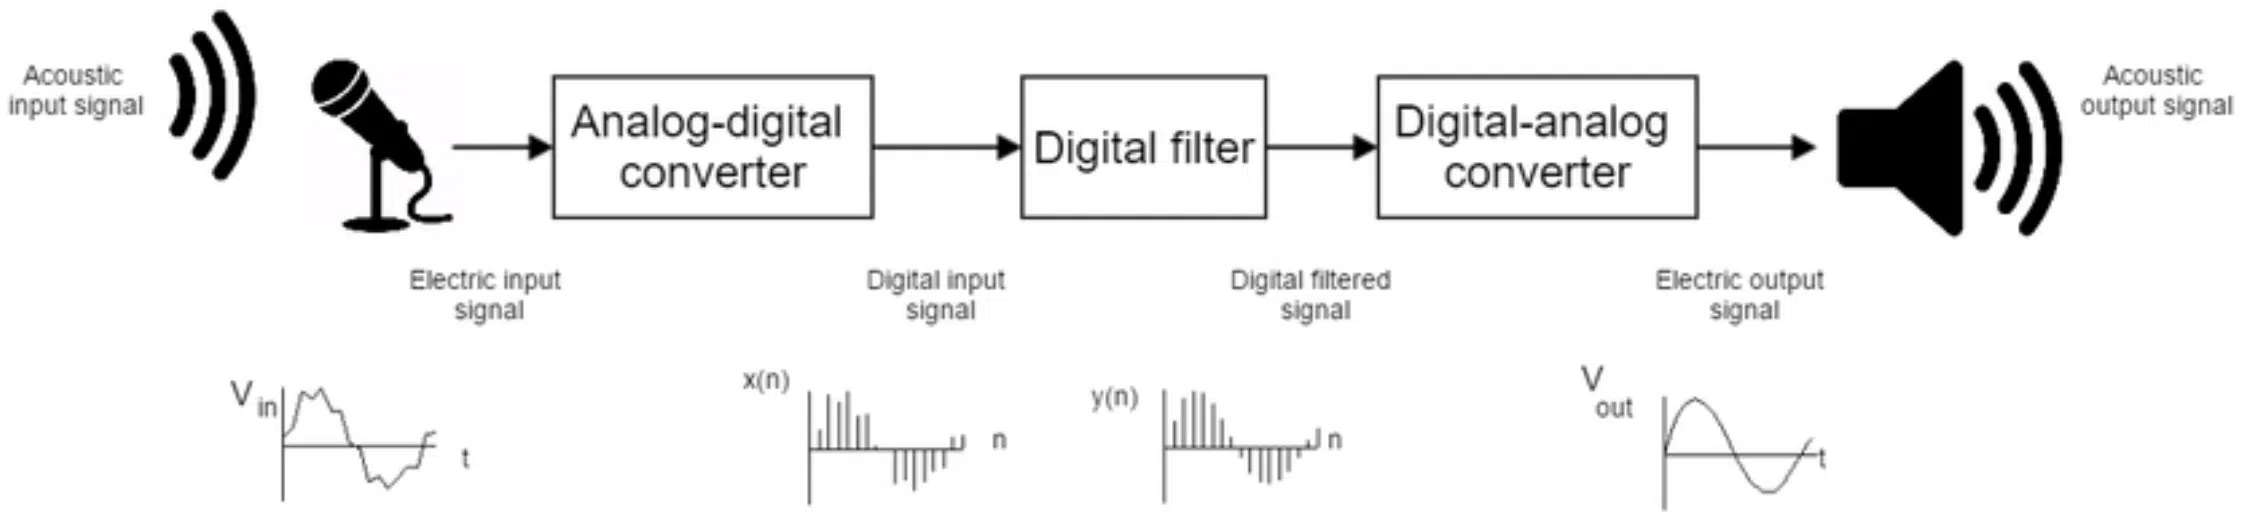 Audio Signal 2 - Unison